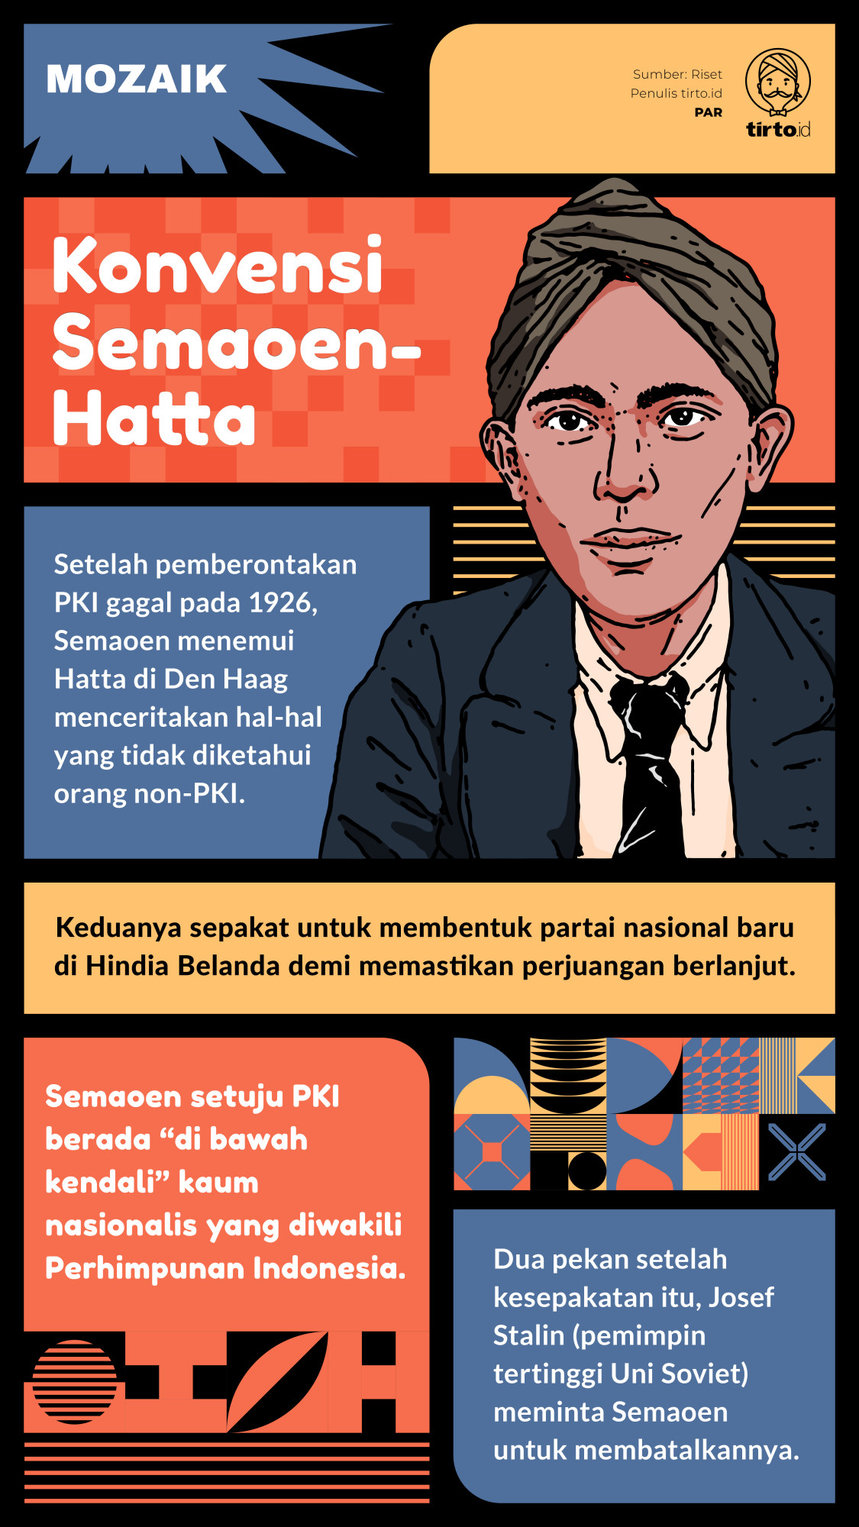 Infografik Mozaik Konvensi Semaoen-Hatta